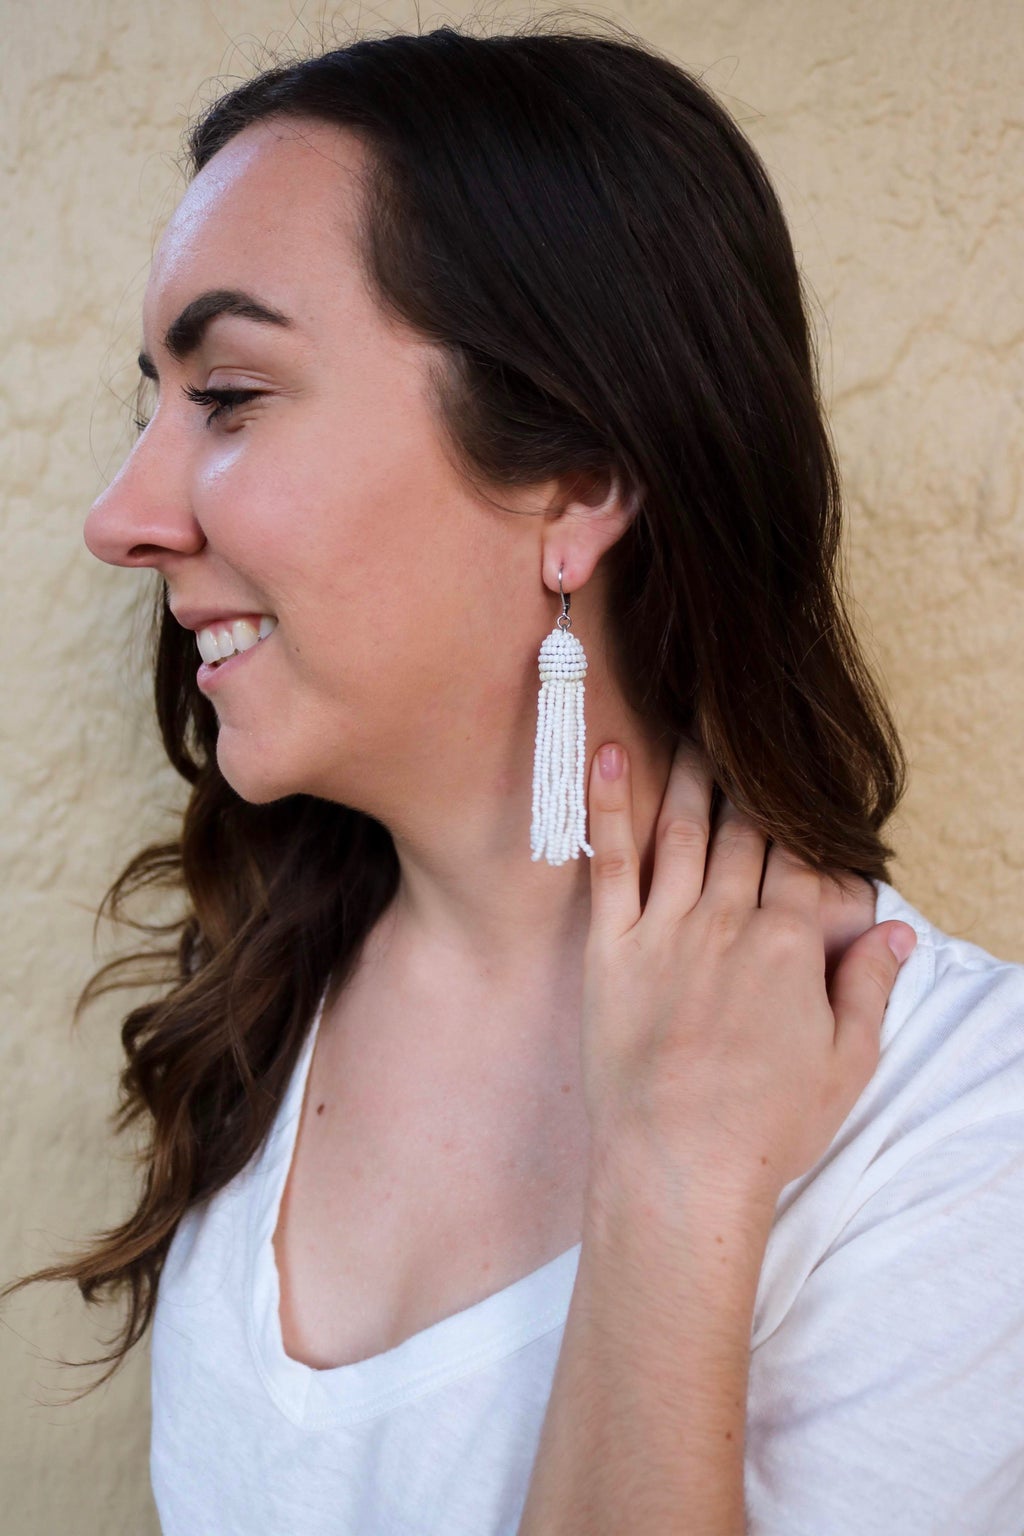 girl wearing white earrings